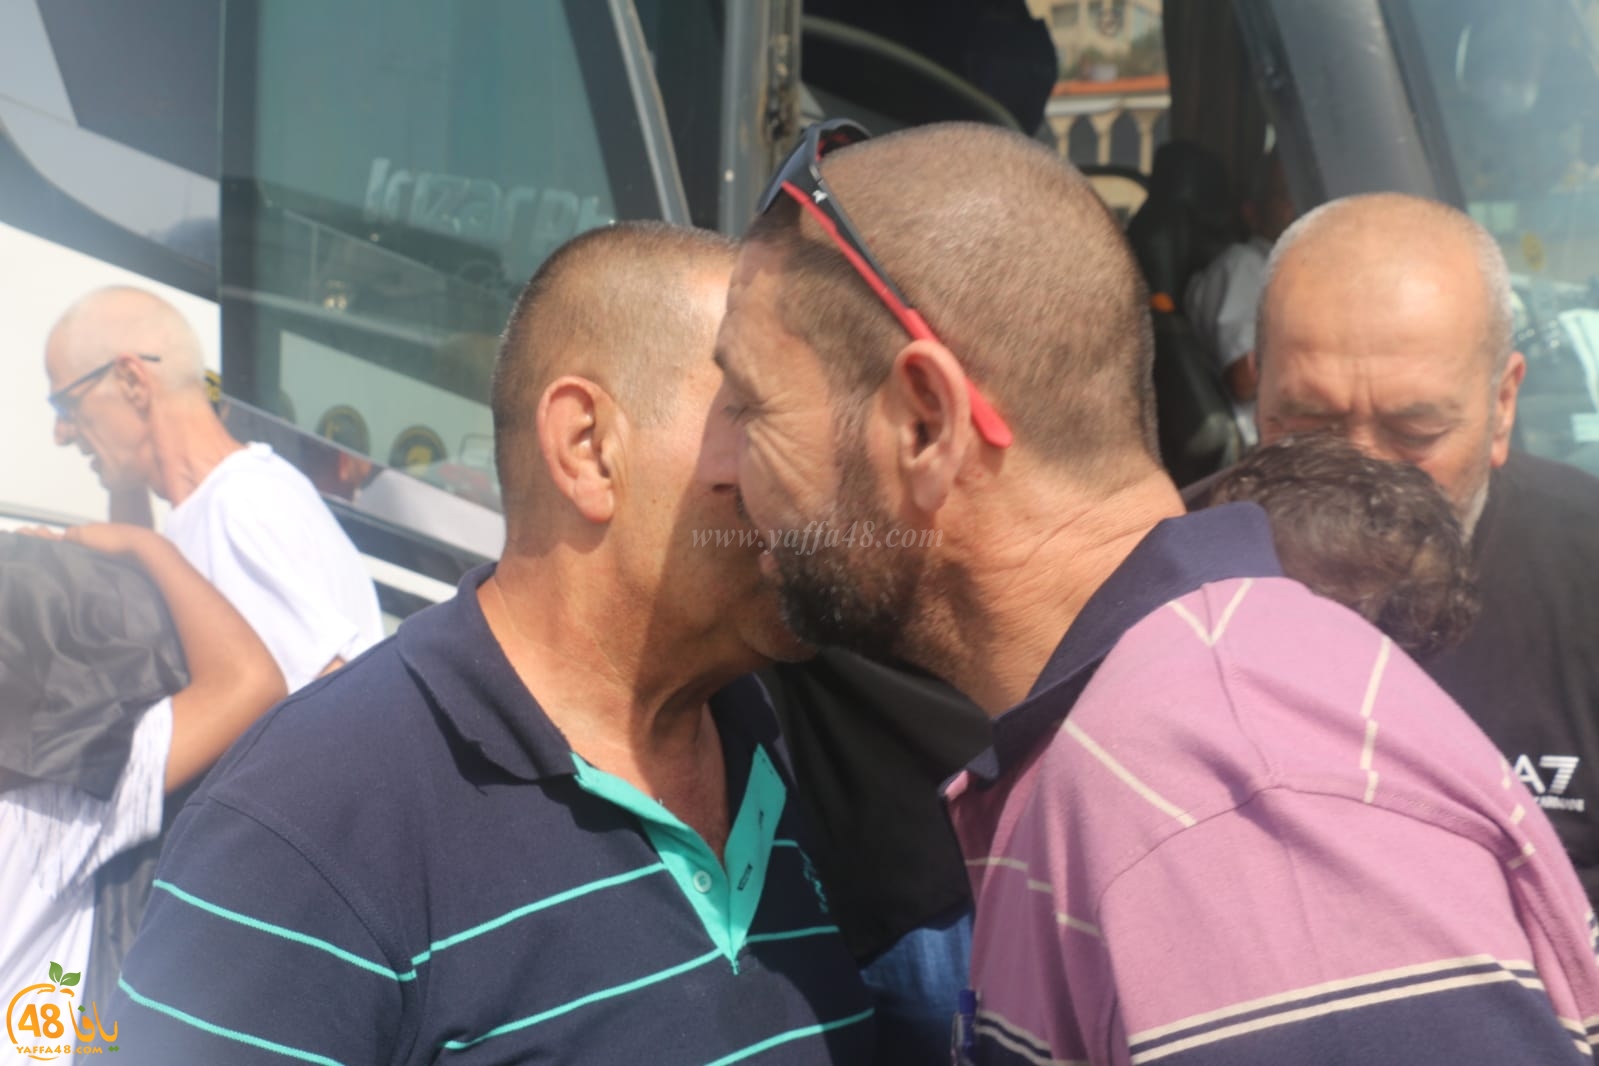  بالصور: الفوج السابع من معتمري مدينة يافا يعودون إلى ديارهم سالمين 